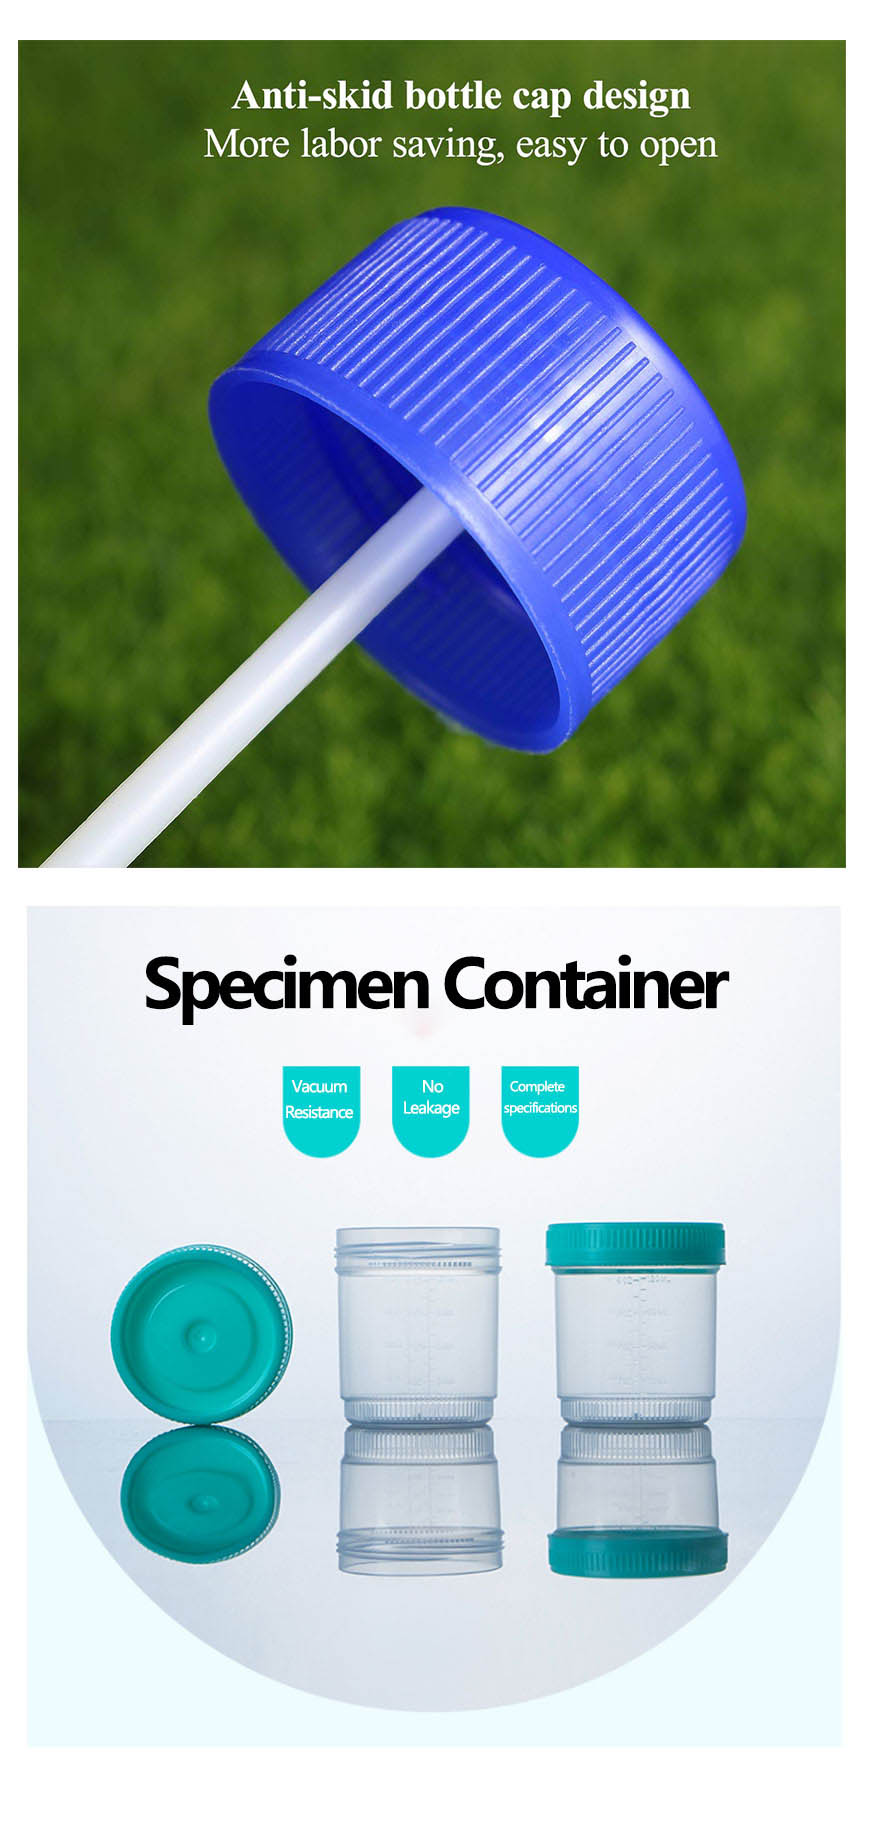 urine specimen containers